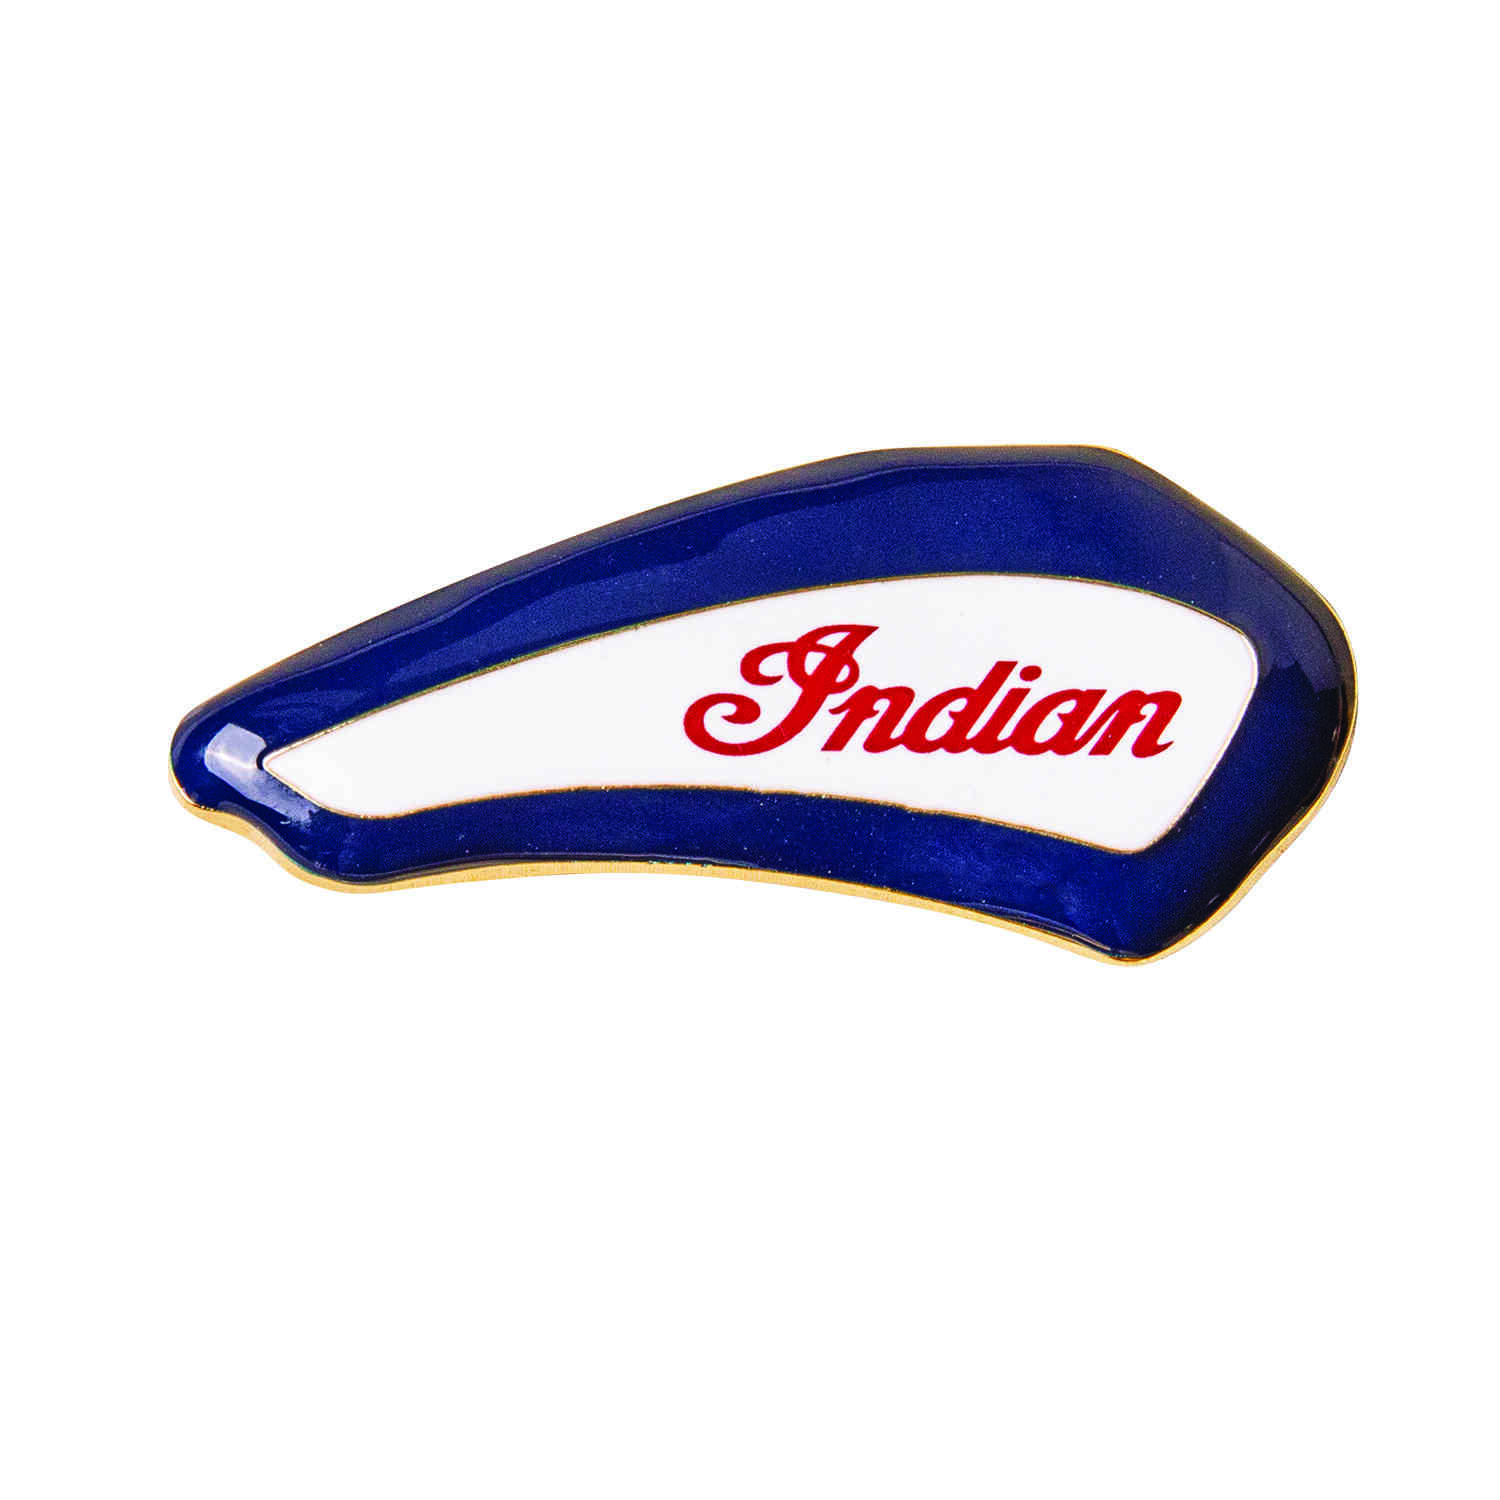 97 63. Scout Pins buy. Indian Motorcycle logo. Indian Motorcycles кольцо купить.